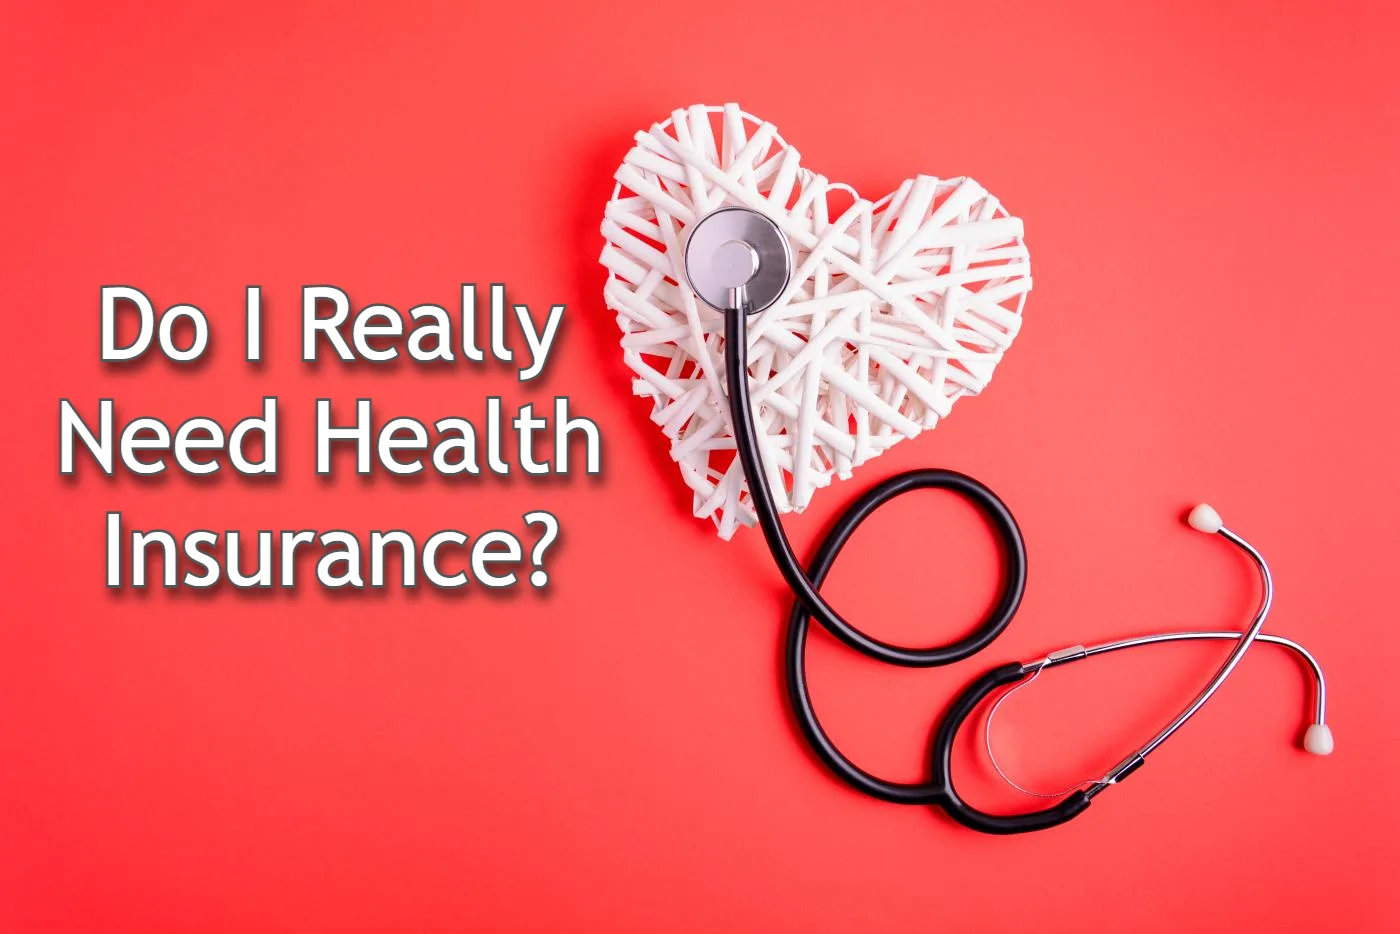 Do I Really Need Health Insurance?